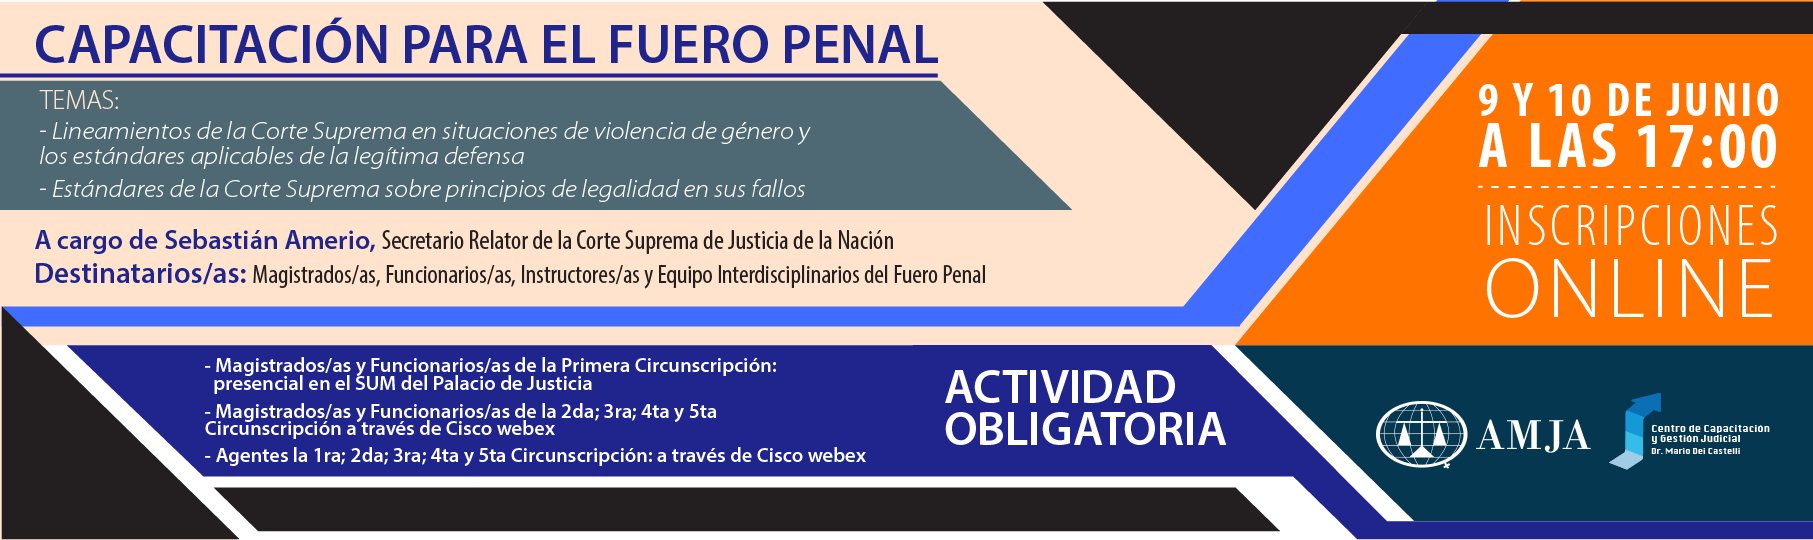 Cr2_Capacitacin_para_el_Fuero_Penal-01